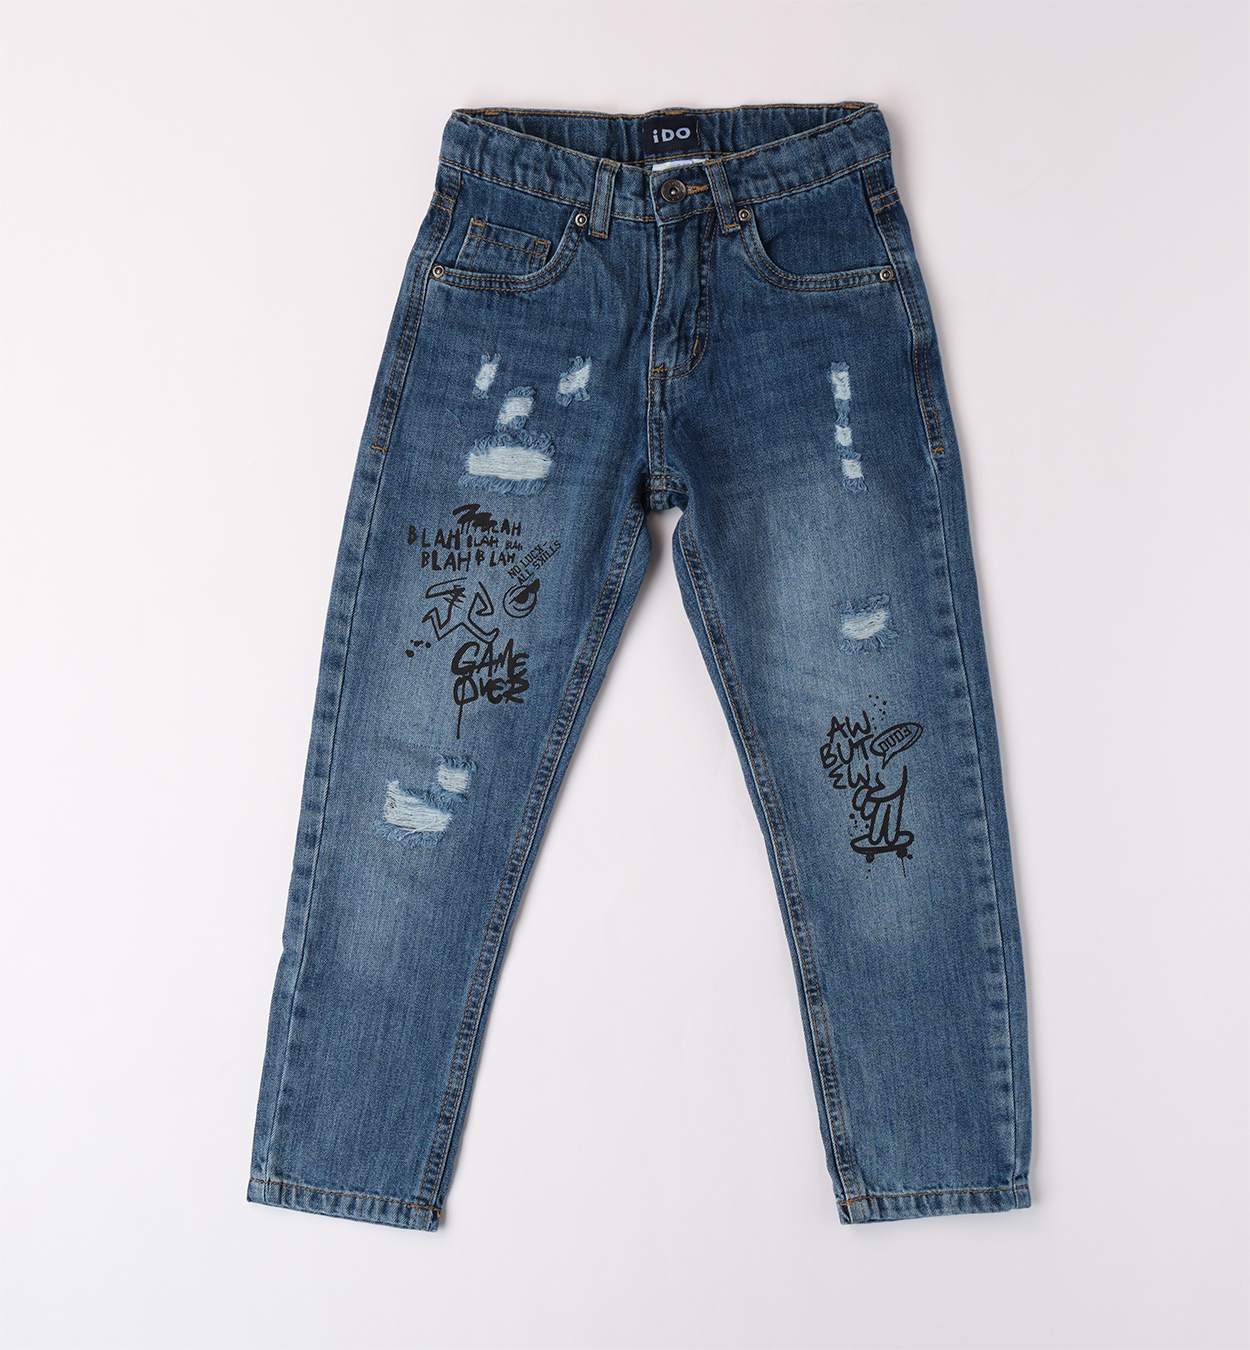 Chlapecké džíny s nápisy IDO